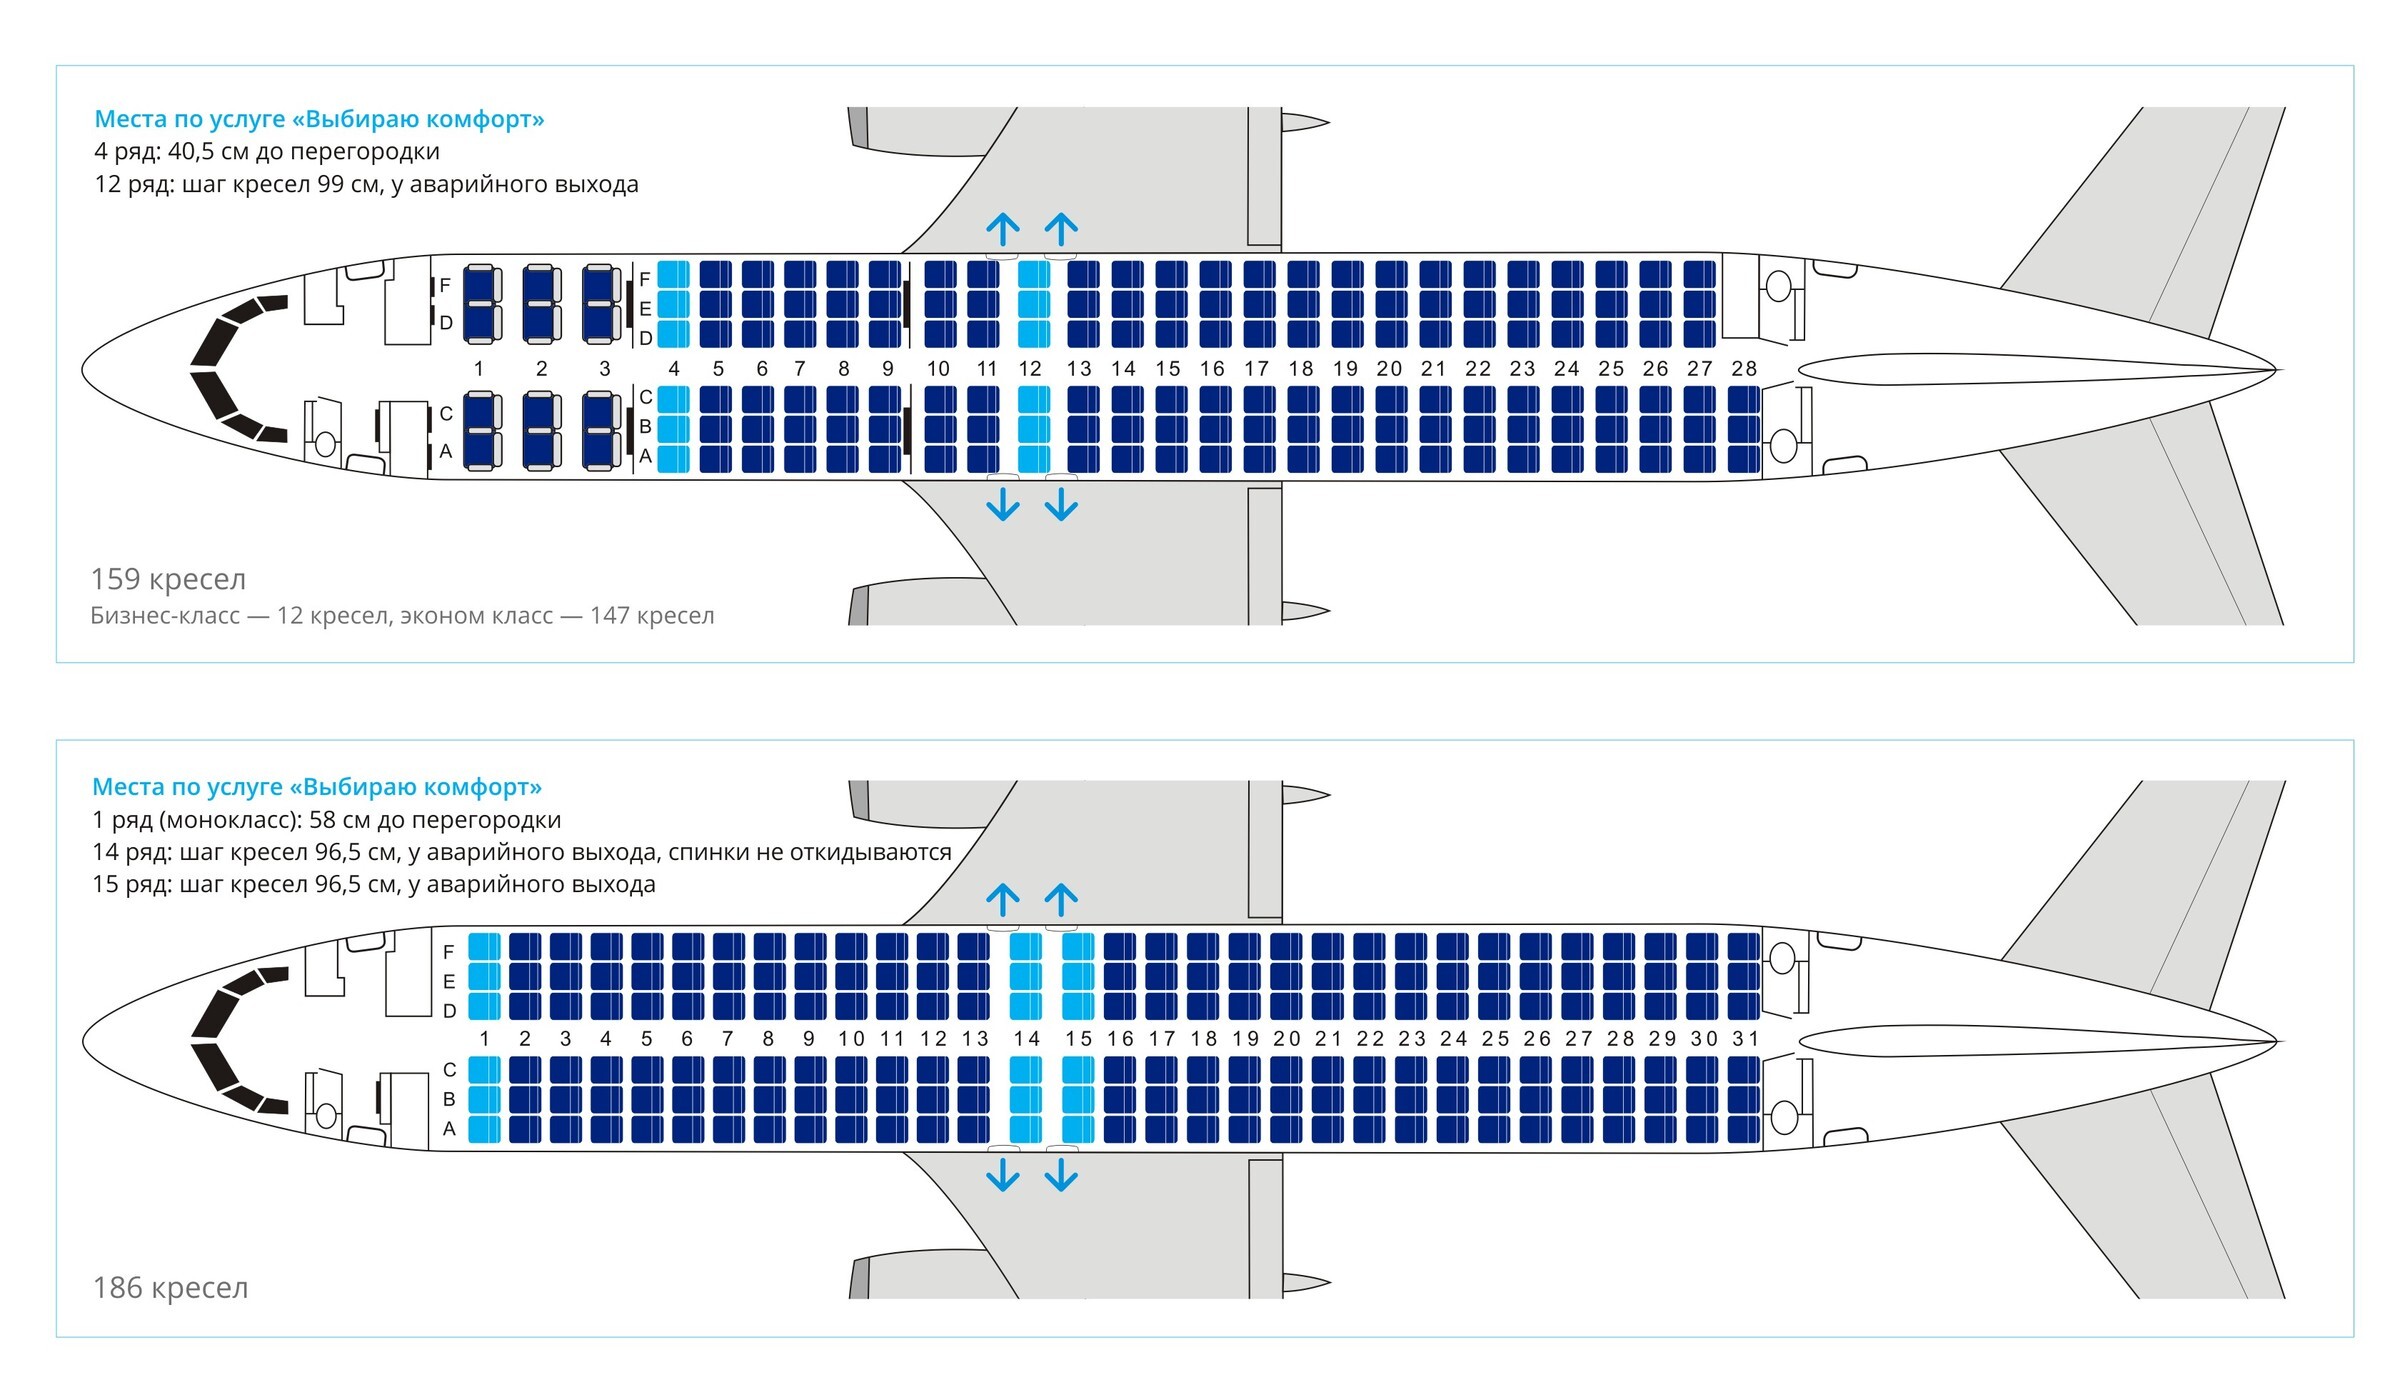 Boeing 767-200 - схема салона, лучшие места и технические характеристики